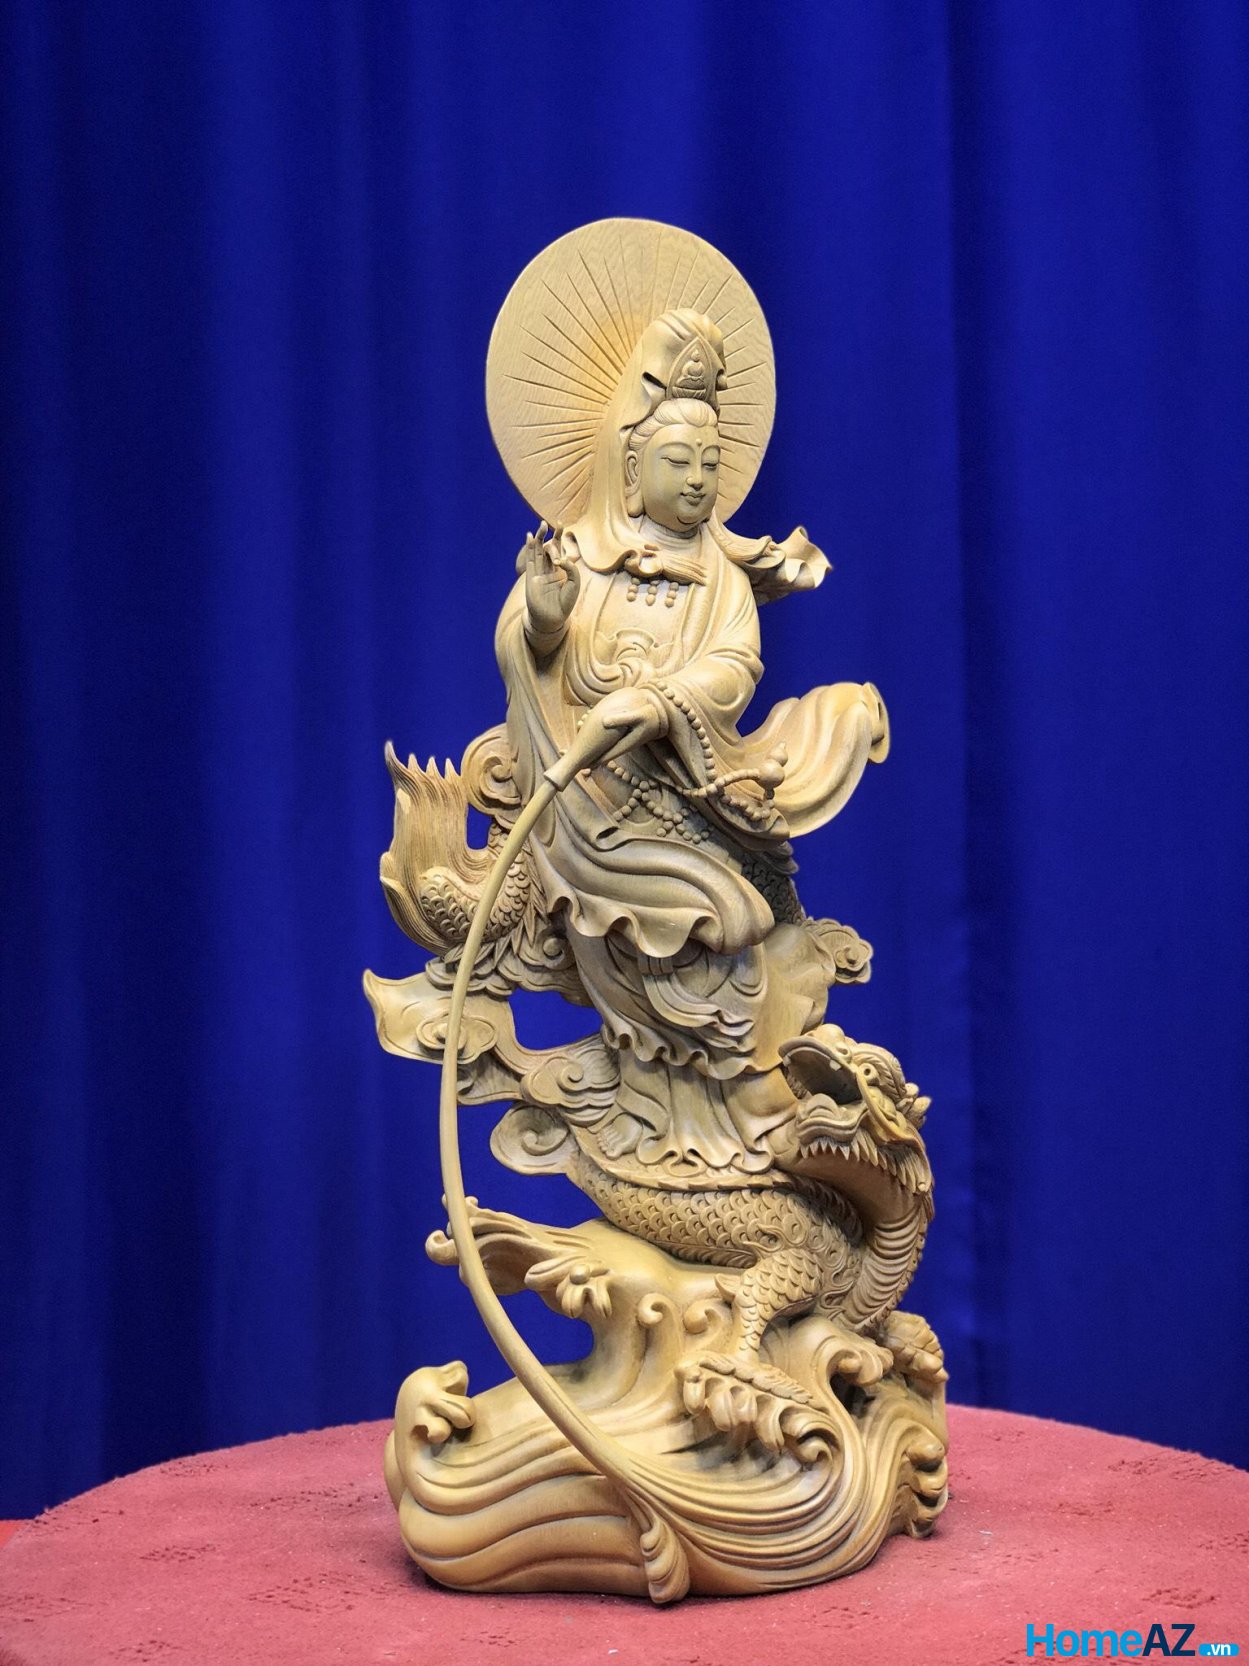 Tượng Phật Bà Quan Âm đứng rồng bằng gỗ vẫn là pho tượng được nhiều người ưa chuộng nhất từ xưa đến nay.